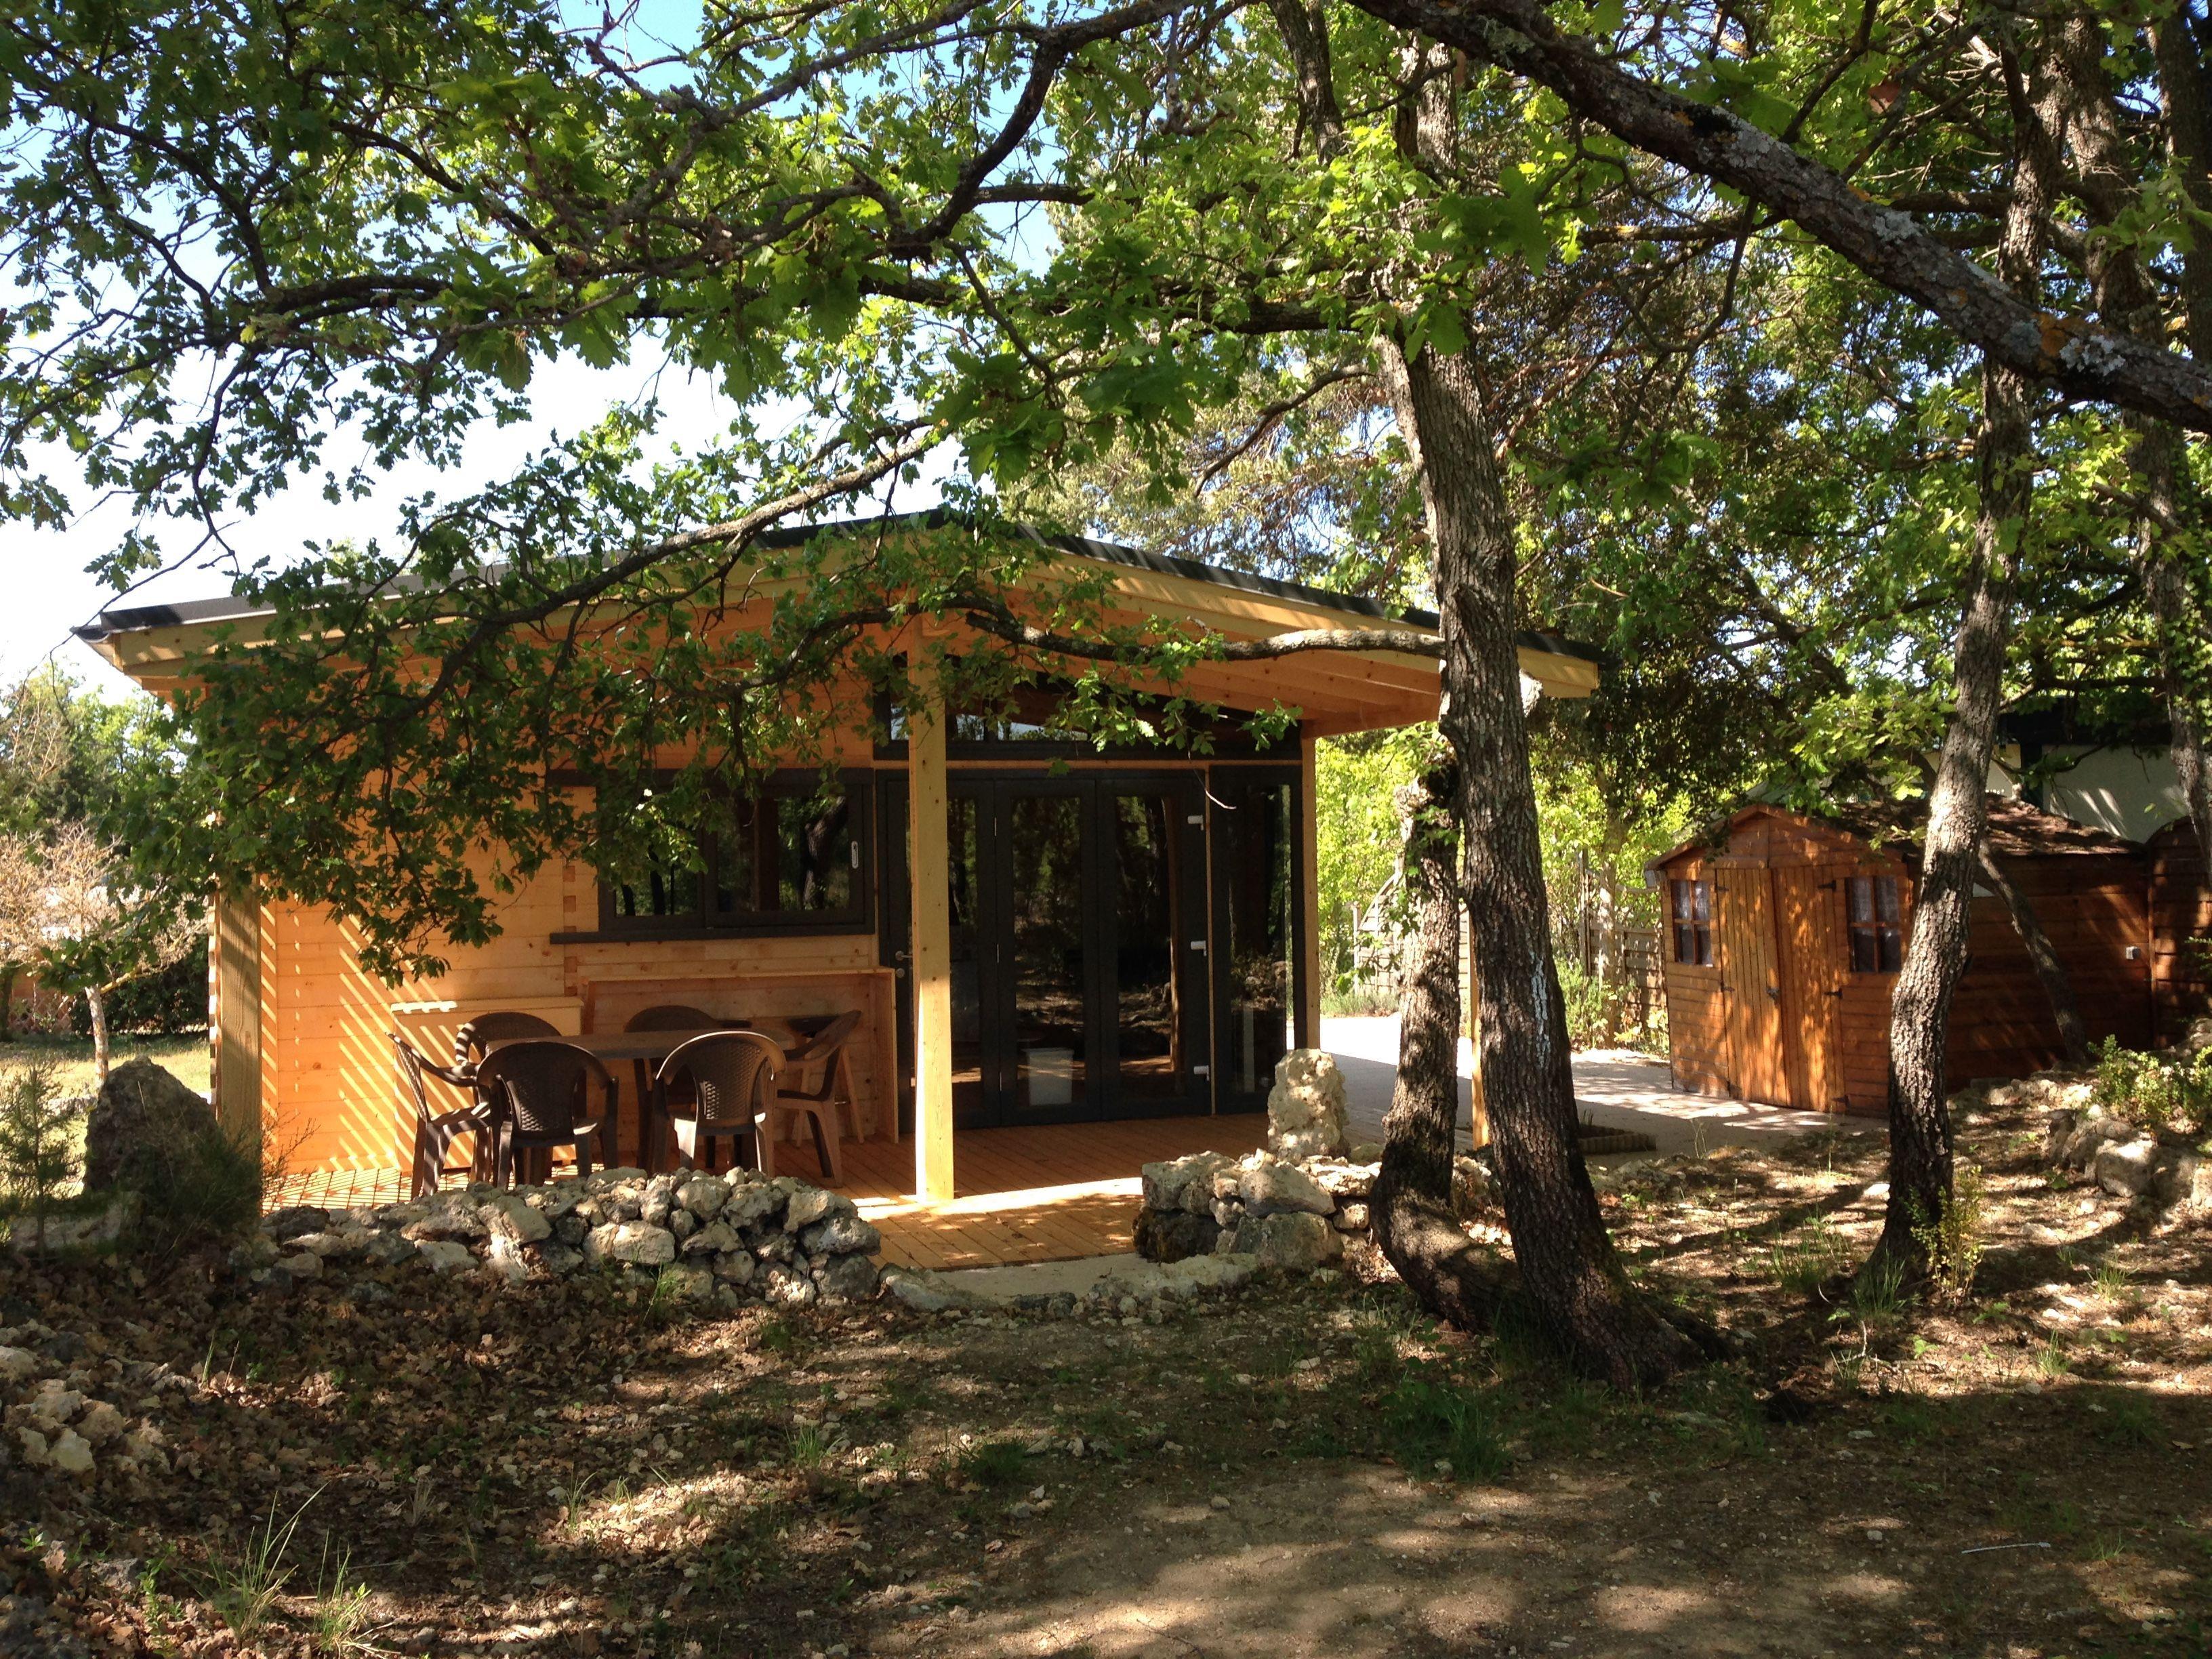 Location - Chalet 100% Bois Bioclimatique Nouveauté 2016 2 Chambres - Camping l'Avelanède